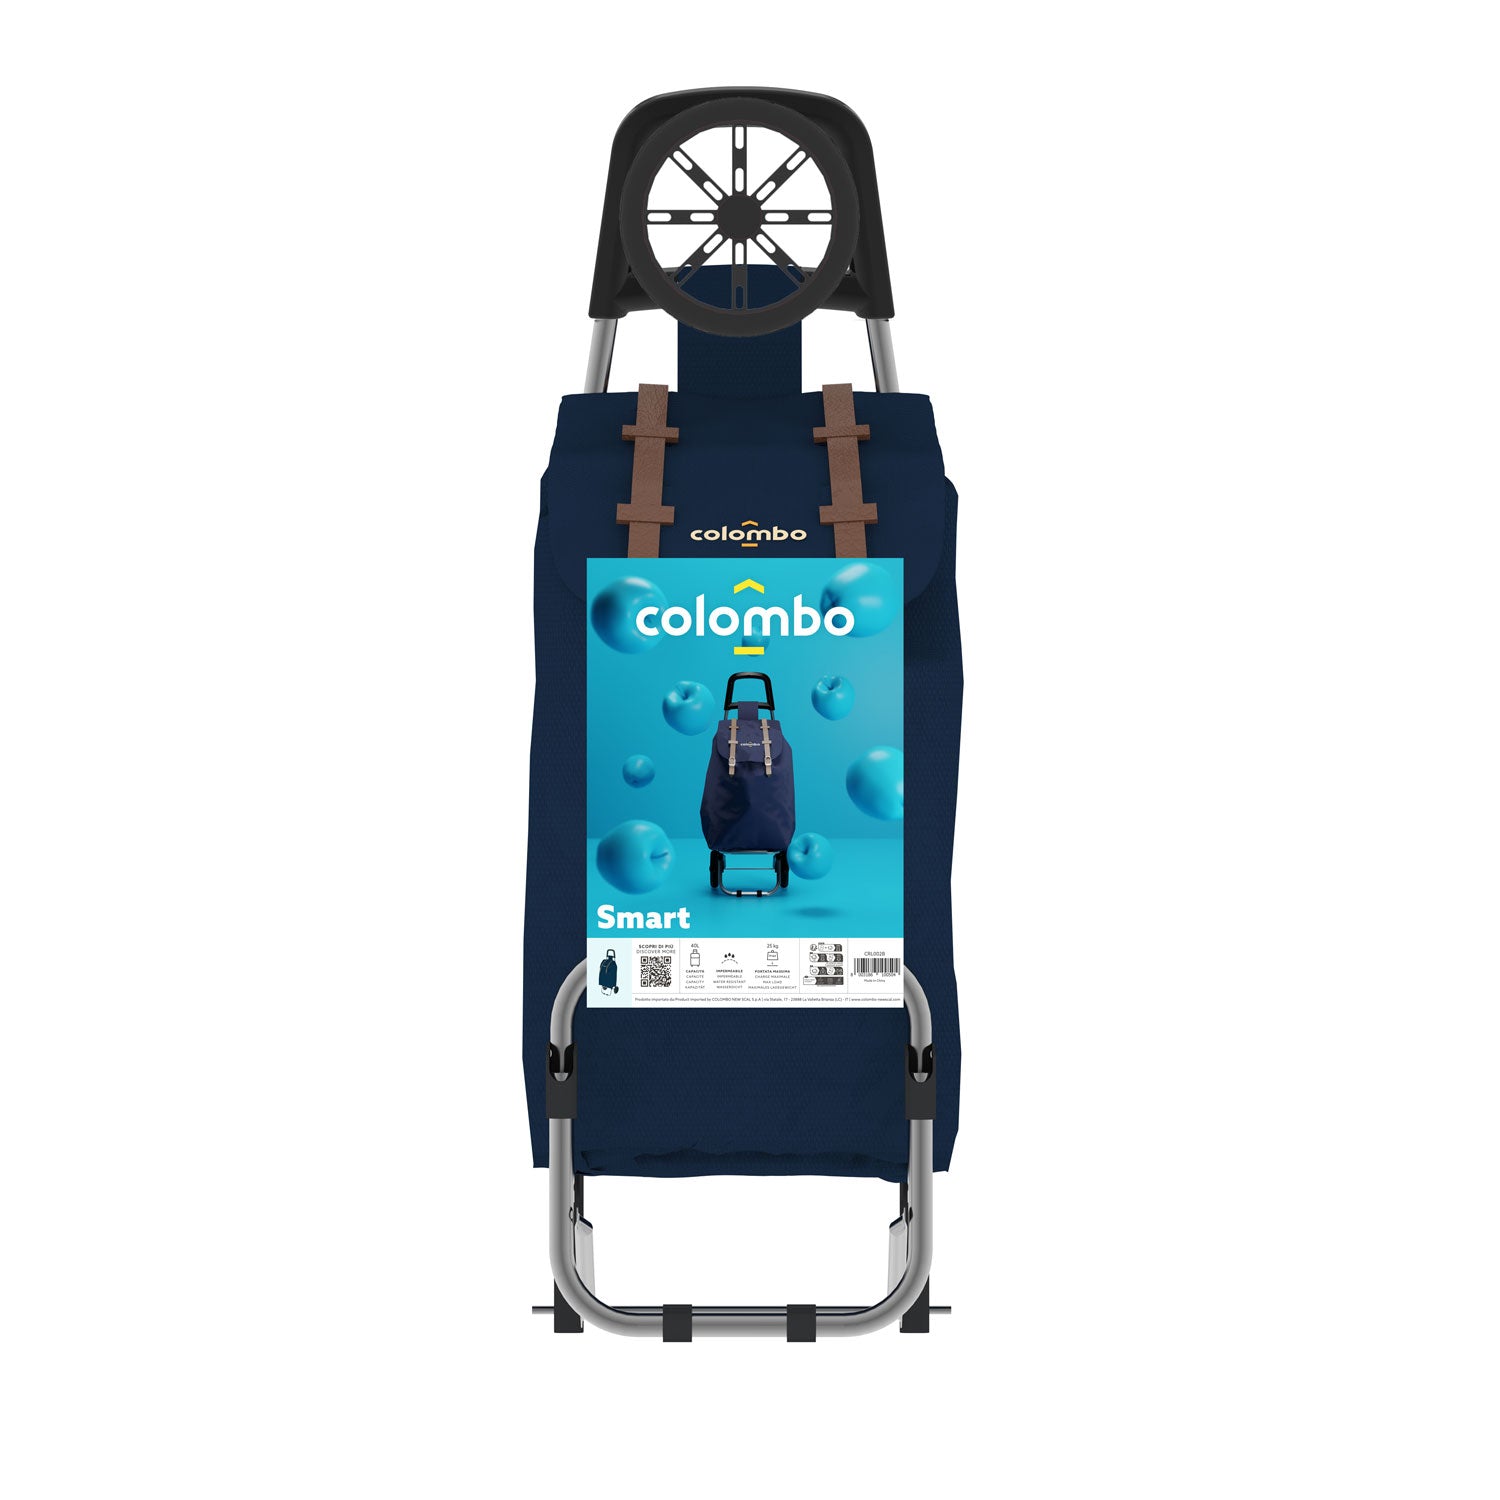 Einkaufstrolley, Einkaufswagen, mit Rädern, wasserdichter Tasche, 40 Liter, Blau, Colombo SMART, 2